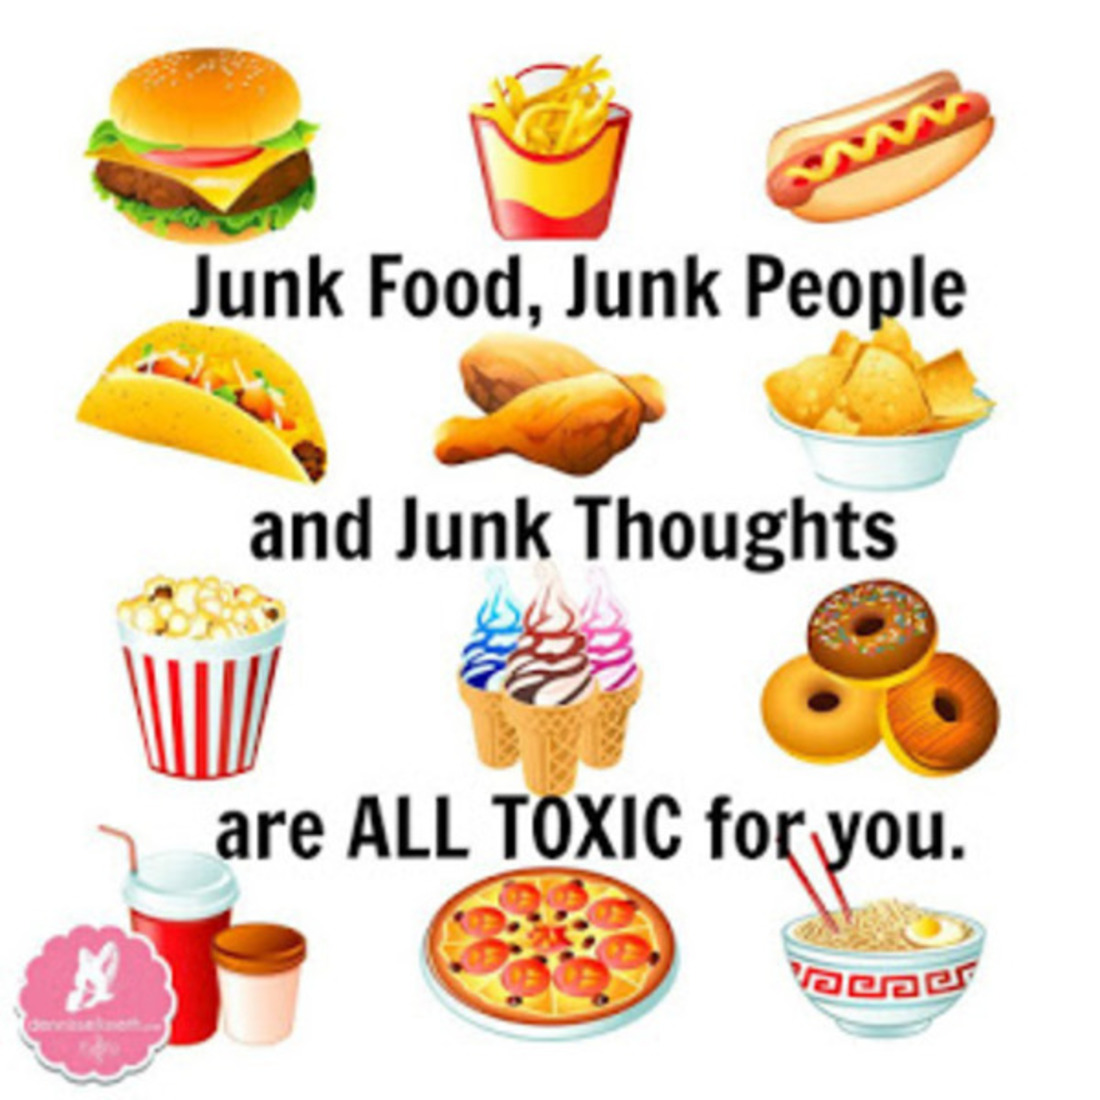 Фаст фуд перевод. Junk food. Junk food на английском. Полезные и вредные продукты на английском. Вредные продукты на английском языке.